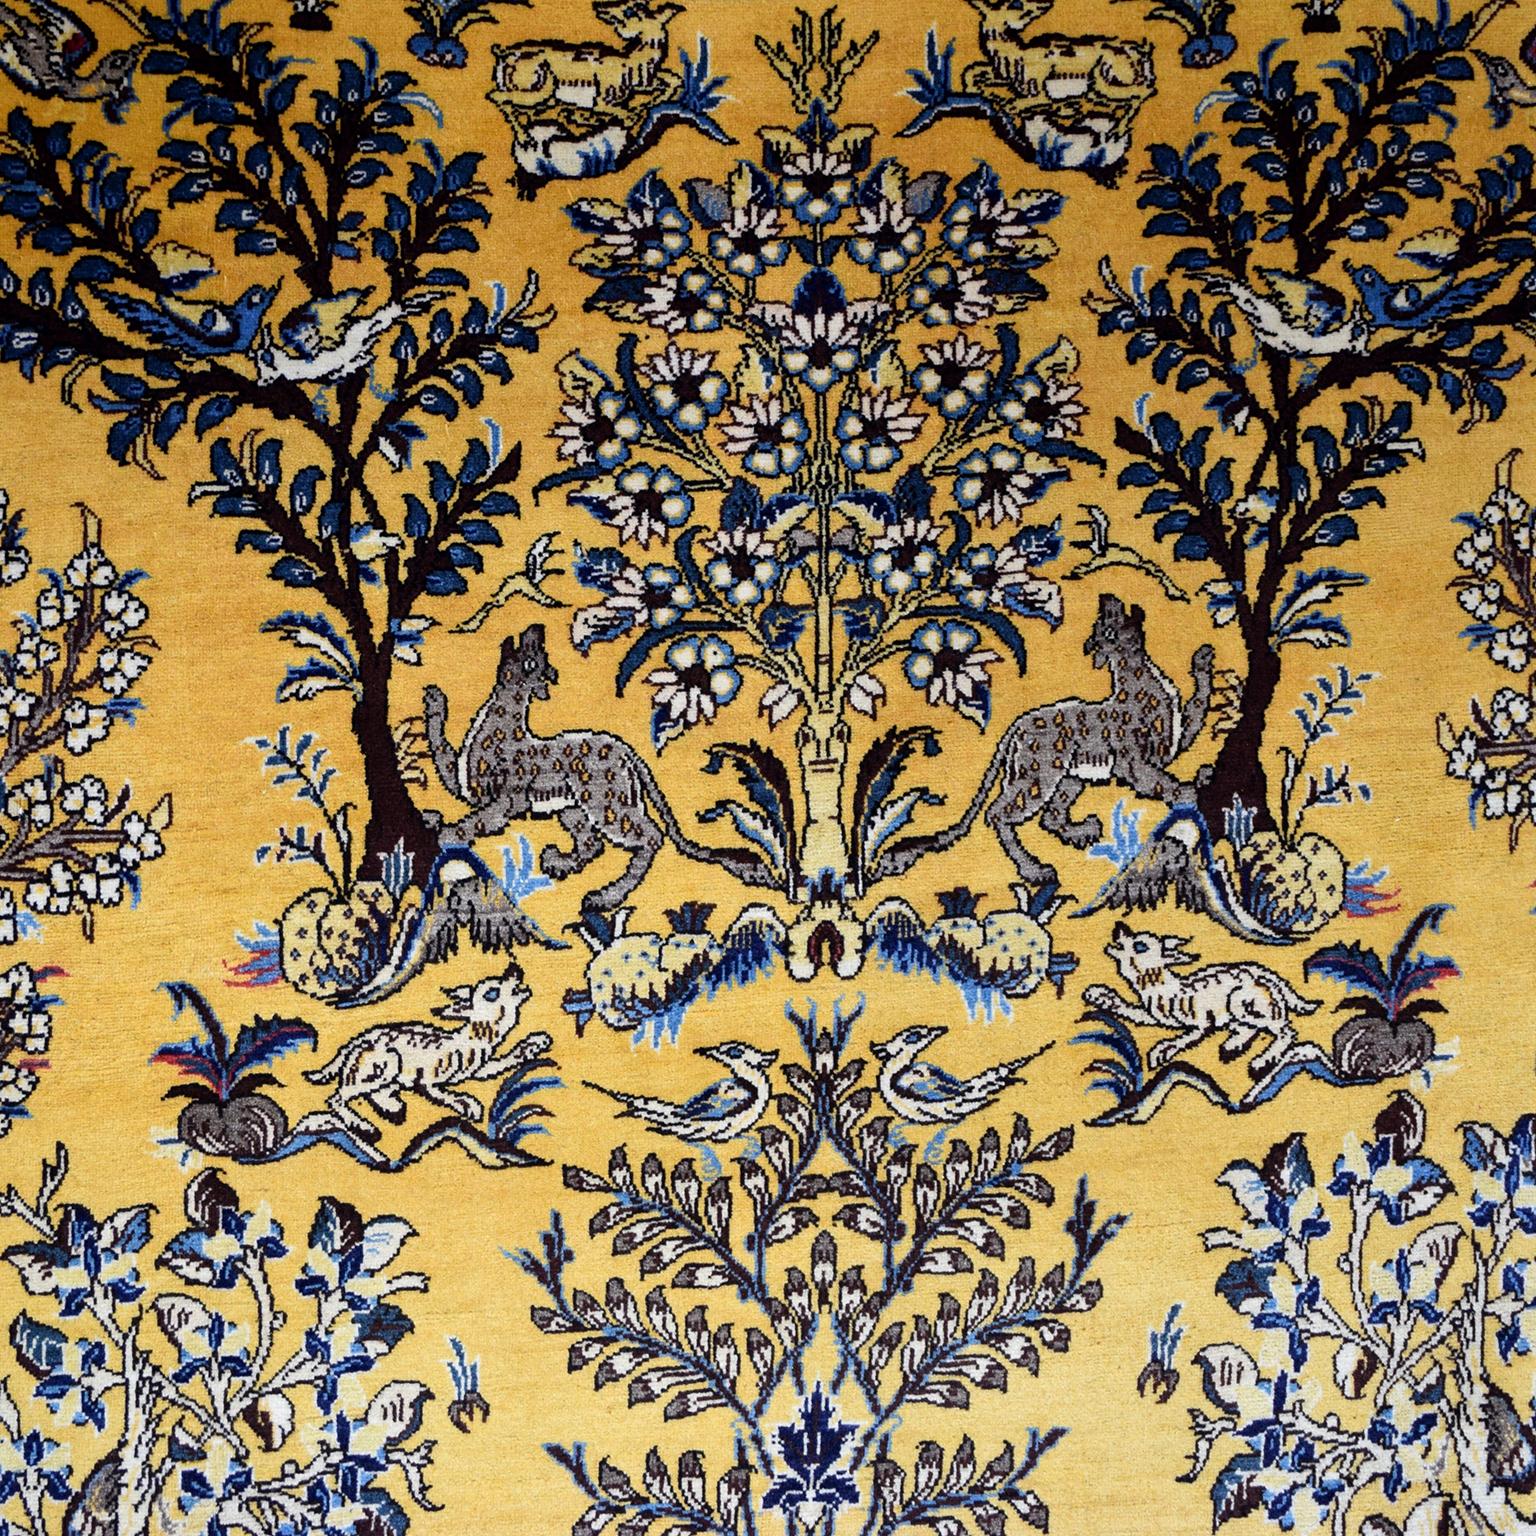 Tapis persan semi-ancien en pure laine datant des années 1940, ce tapis Ghom présente un motif d'arbre de vie sur un surprenant fond doré, les arbres et les animaux étant représentés dans un bleu profond. Le tapis est noué à la main selon la méthode